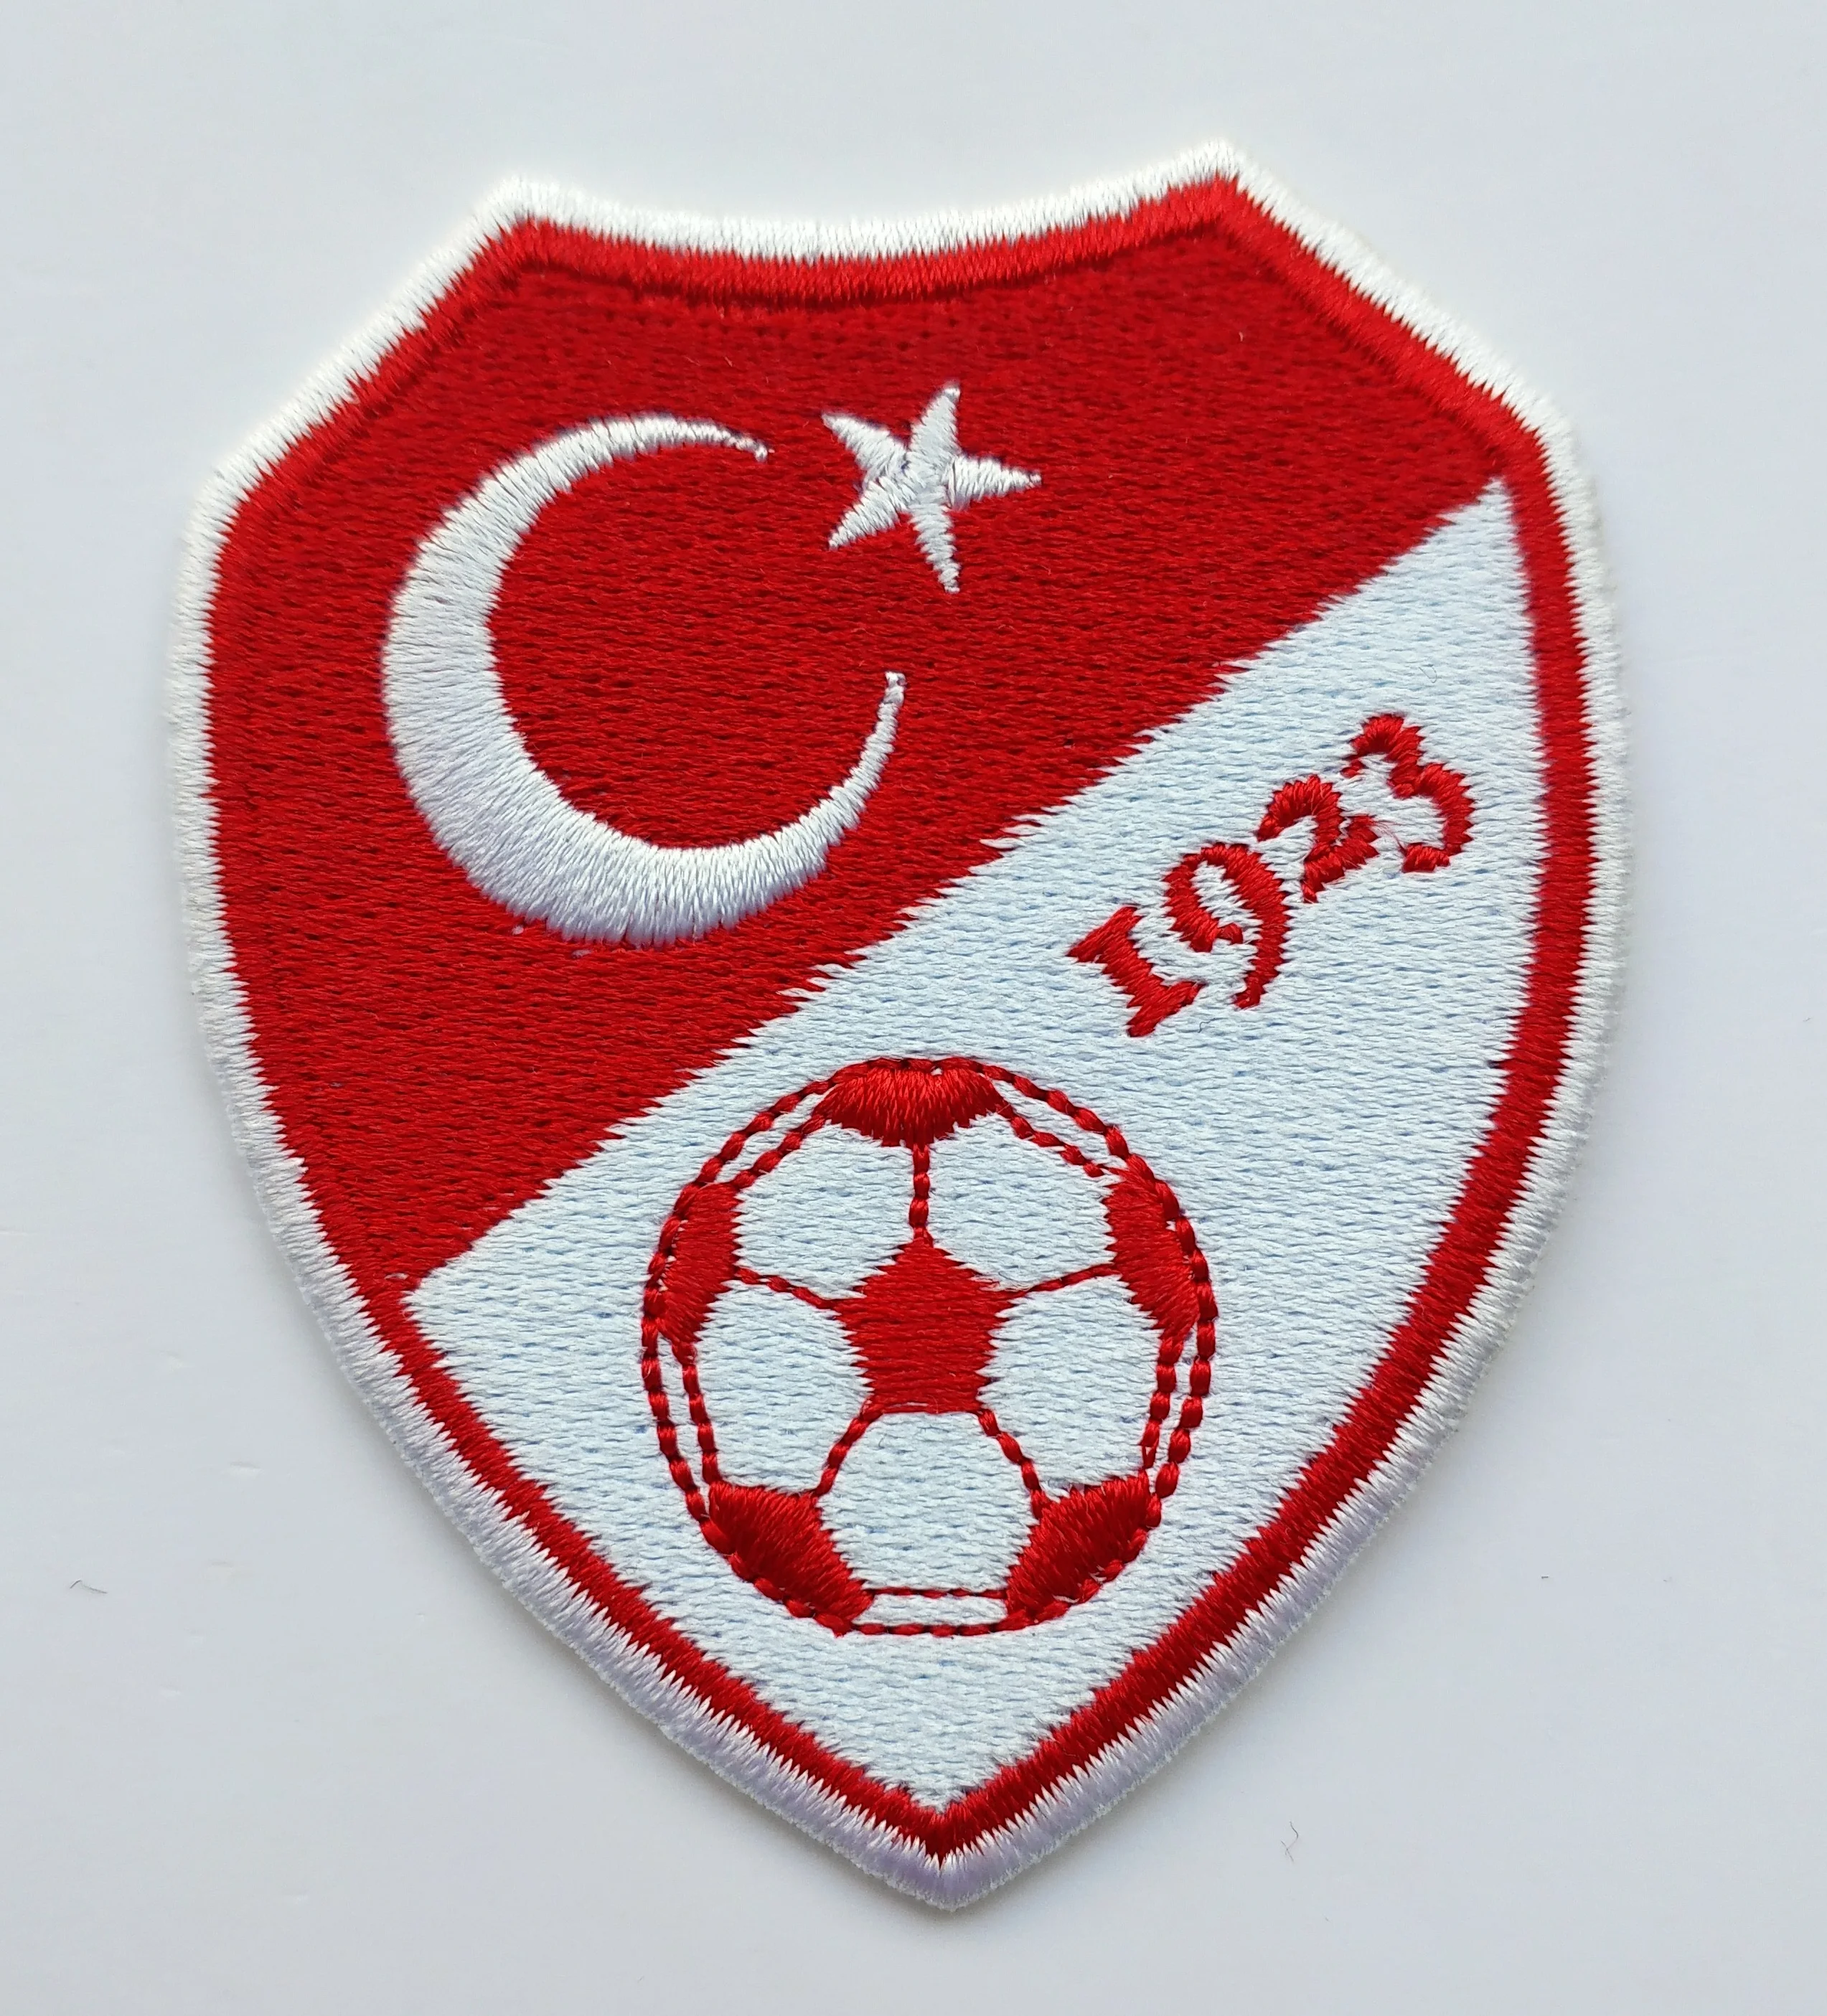 Aufnäher Patch Fußball Football club Türkei Galatasaray Iron on Bügelbild 